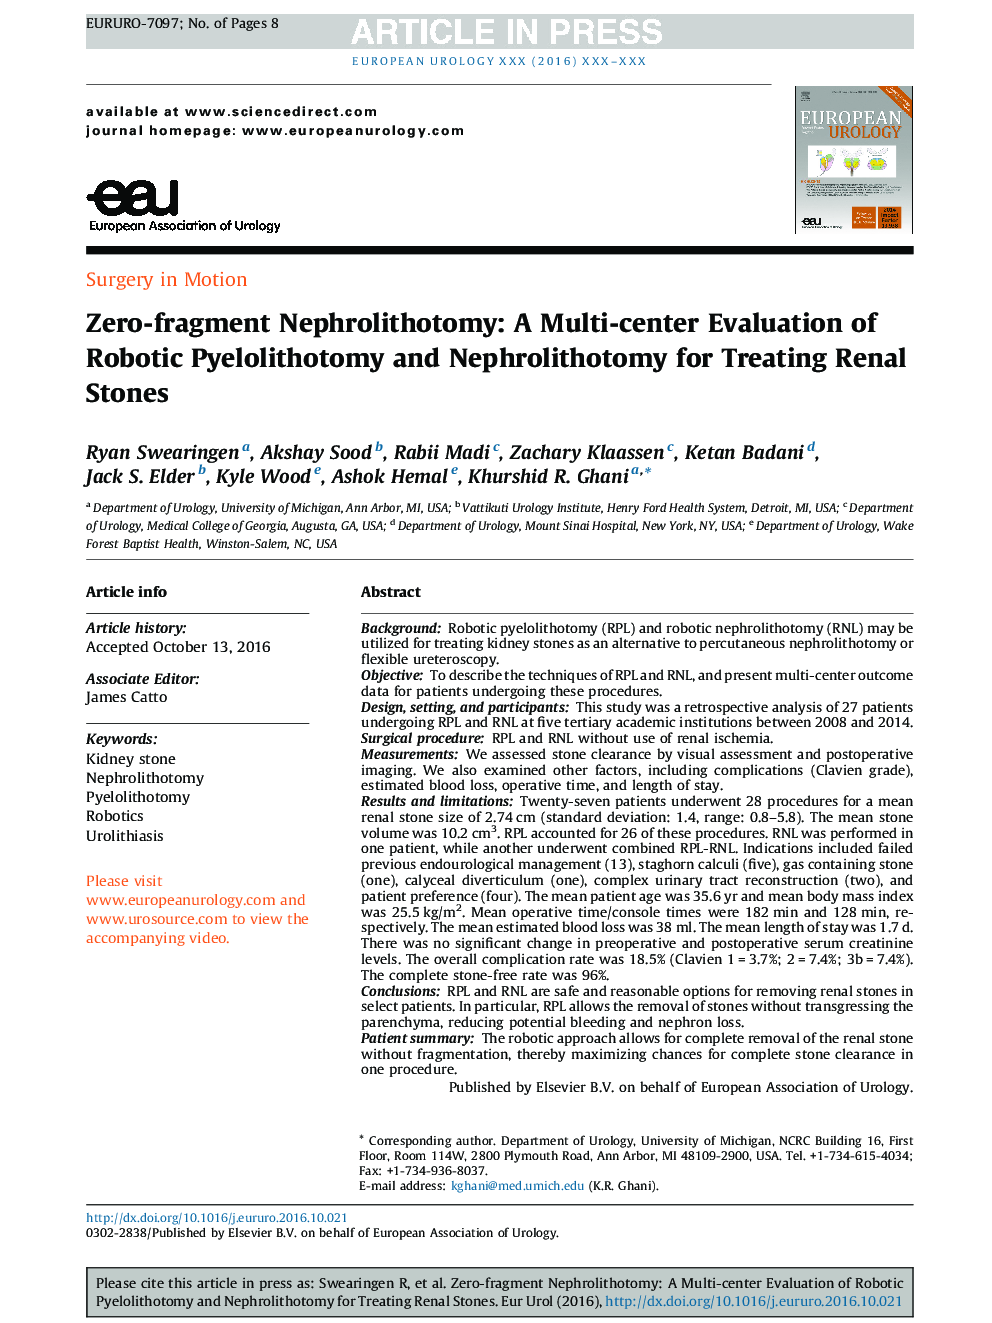 Zero-fragment Nephrolithotomy: A Multi-center Evaluation of Robotic Pyelolithotomy and Nephrolithotomy for Treating Renal Stones